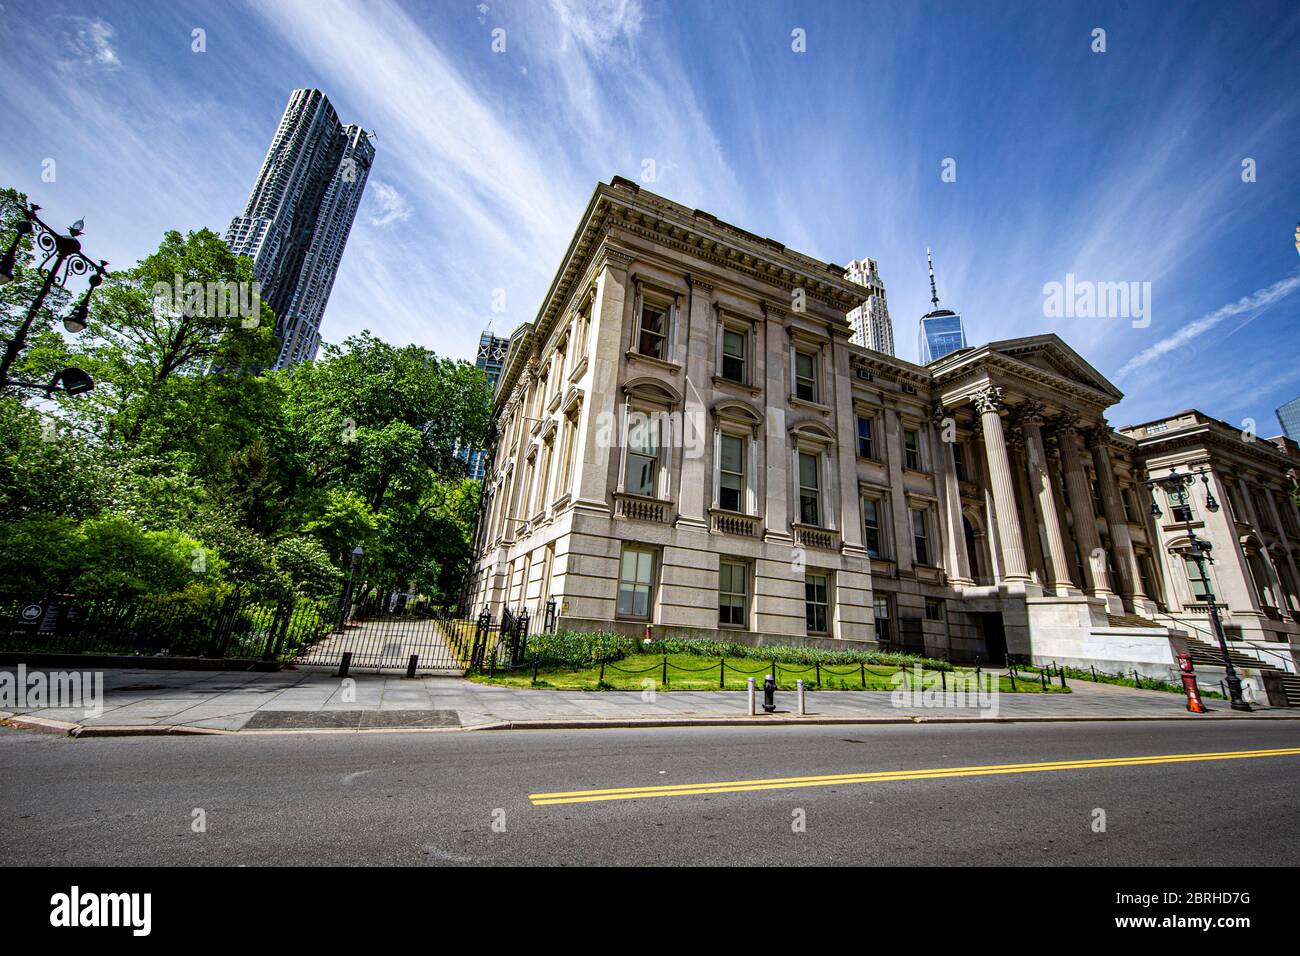 Le palais de justice de Tweed sur Chambers Sreet à New York le mercredi 20 mai 2020. (Photo : Gordon Donovan) Banque D'Images